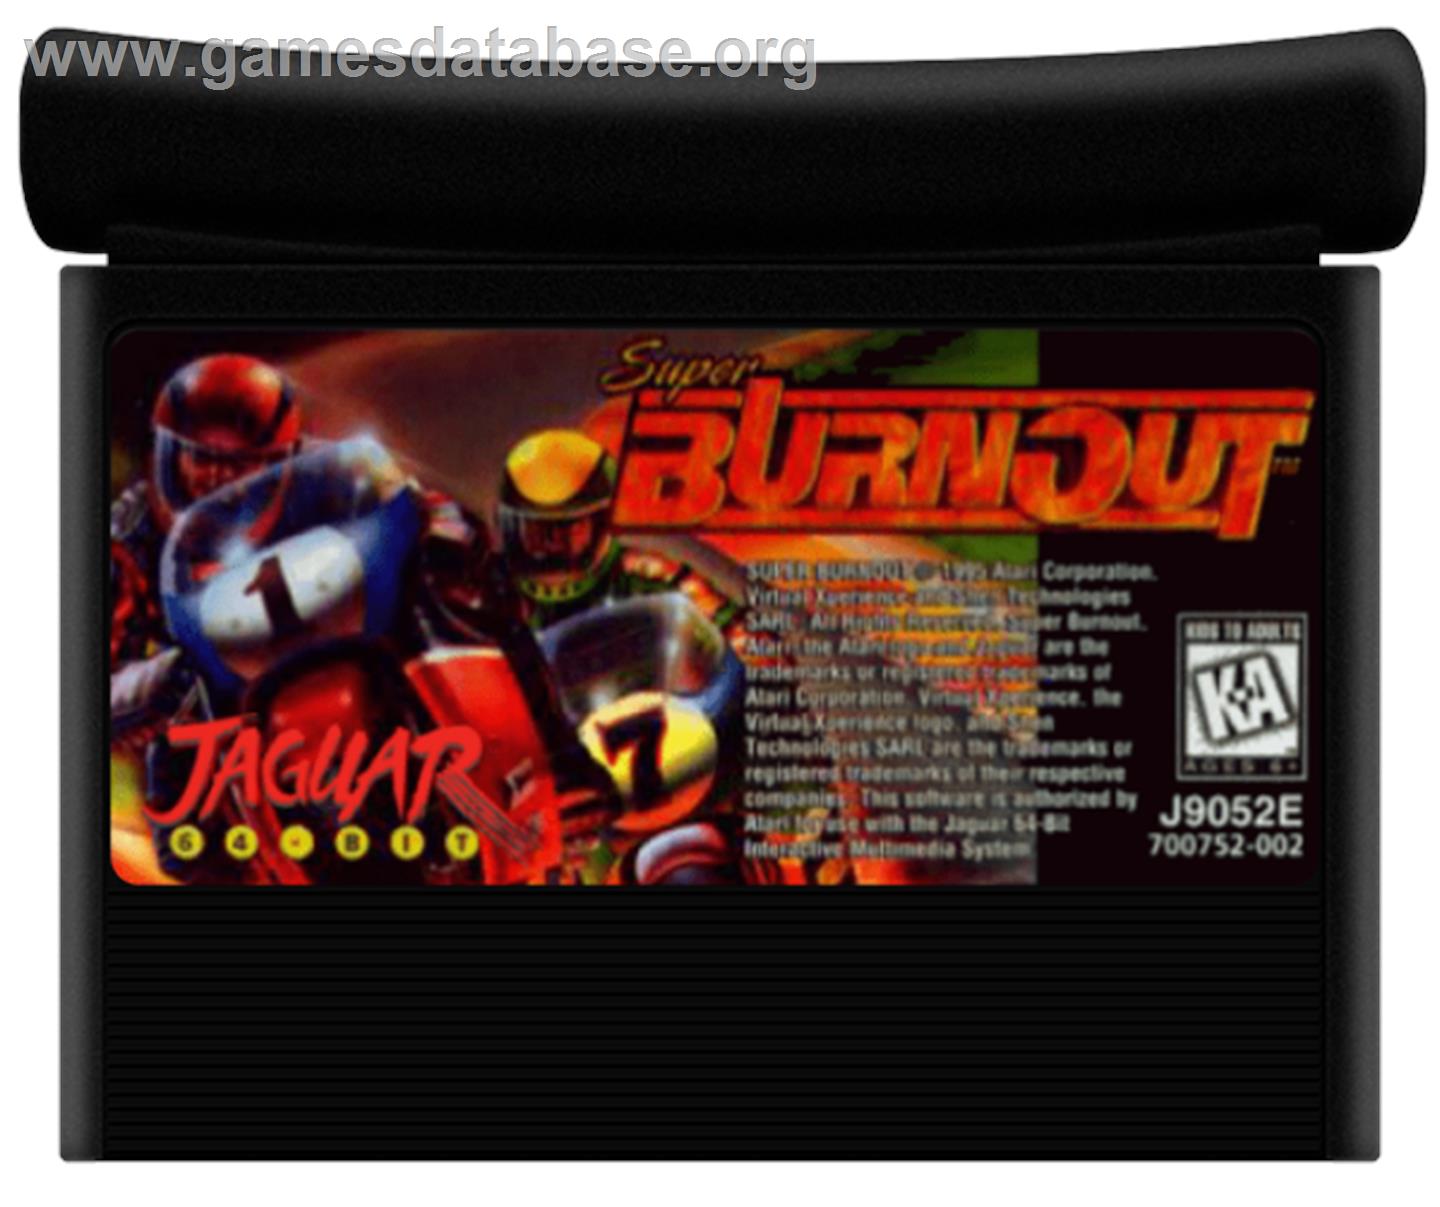 Super Burnout - Atari Jaguar - Artwork - Cartridge